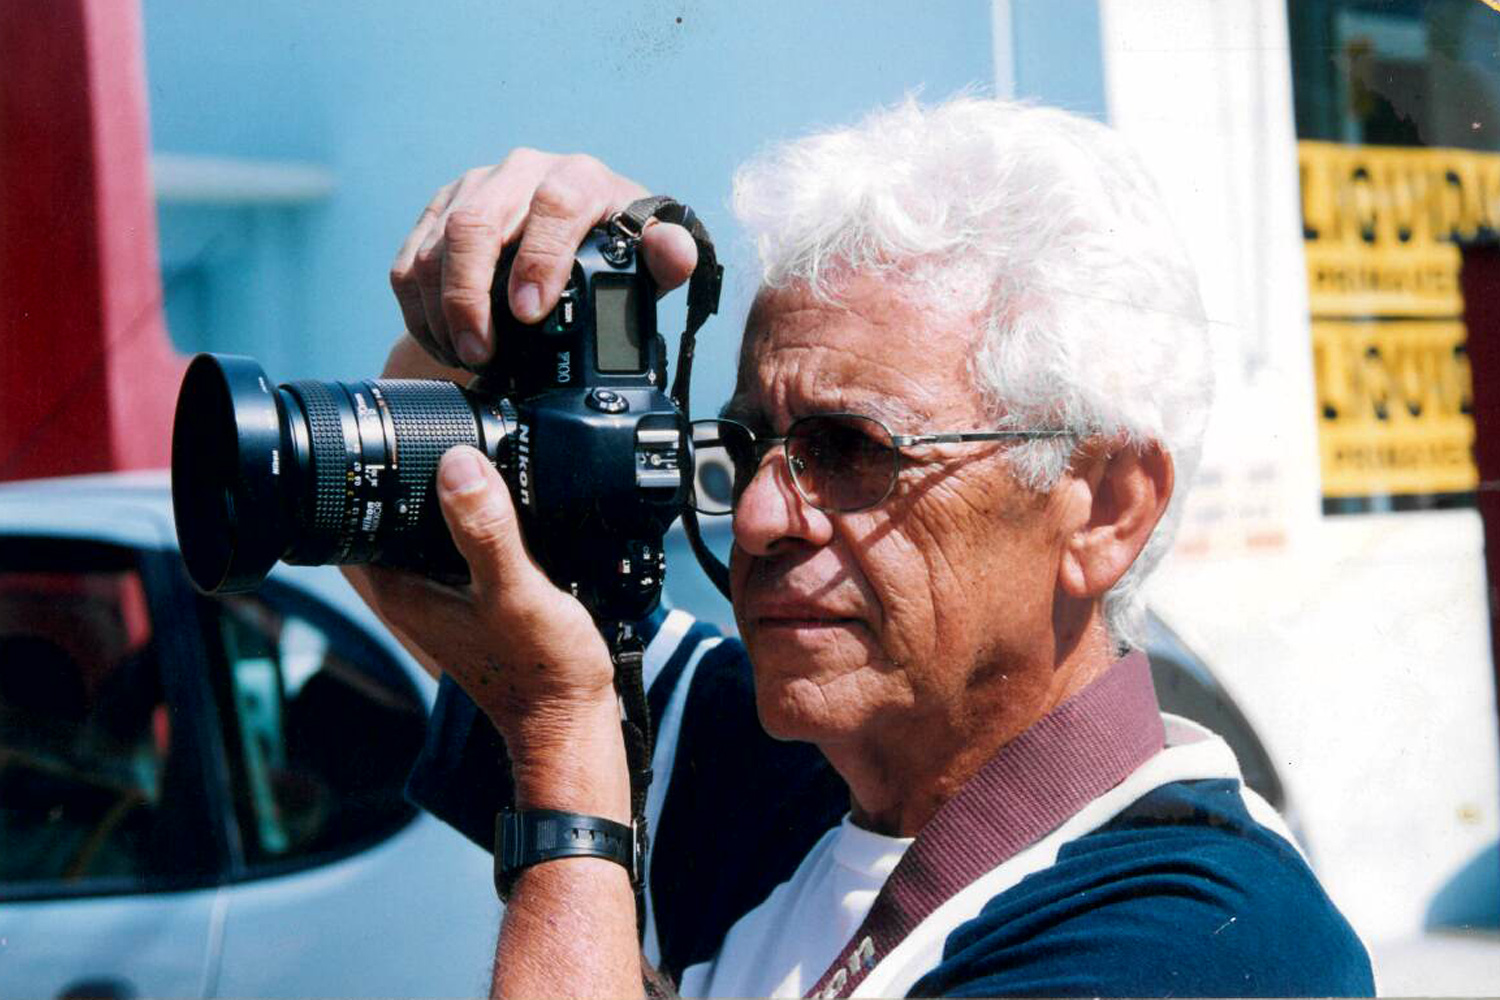 #PraCegoVer: foto mostra o jornalista Tom Santos com sua máquina fotográfica, registrando uma cena urbana.